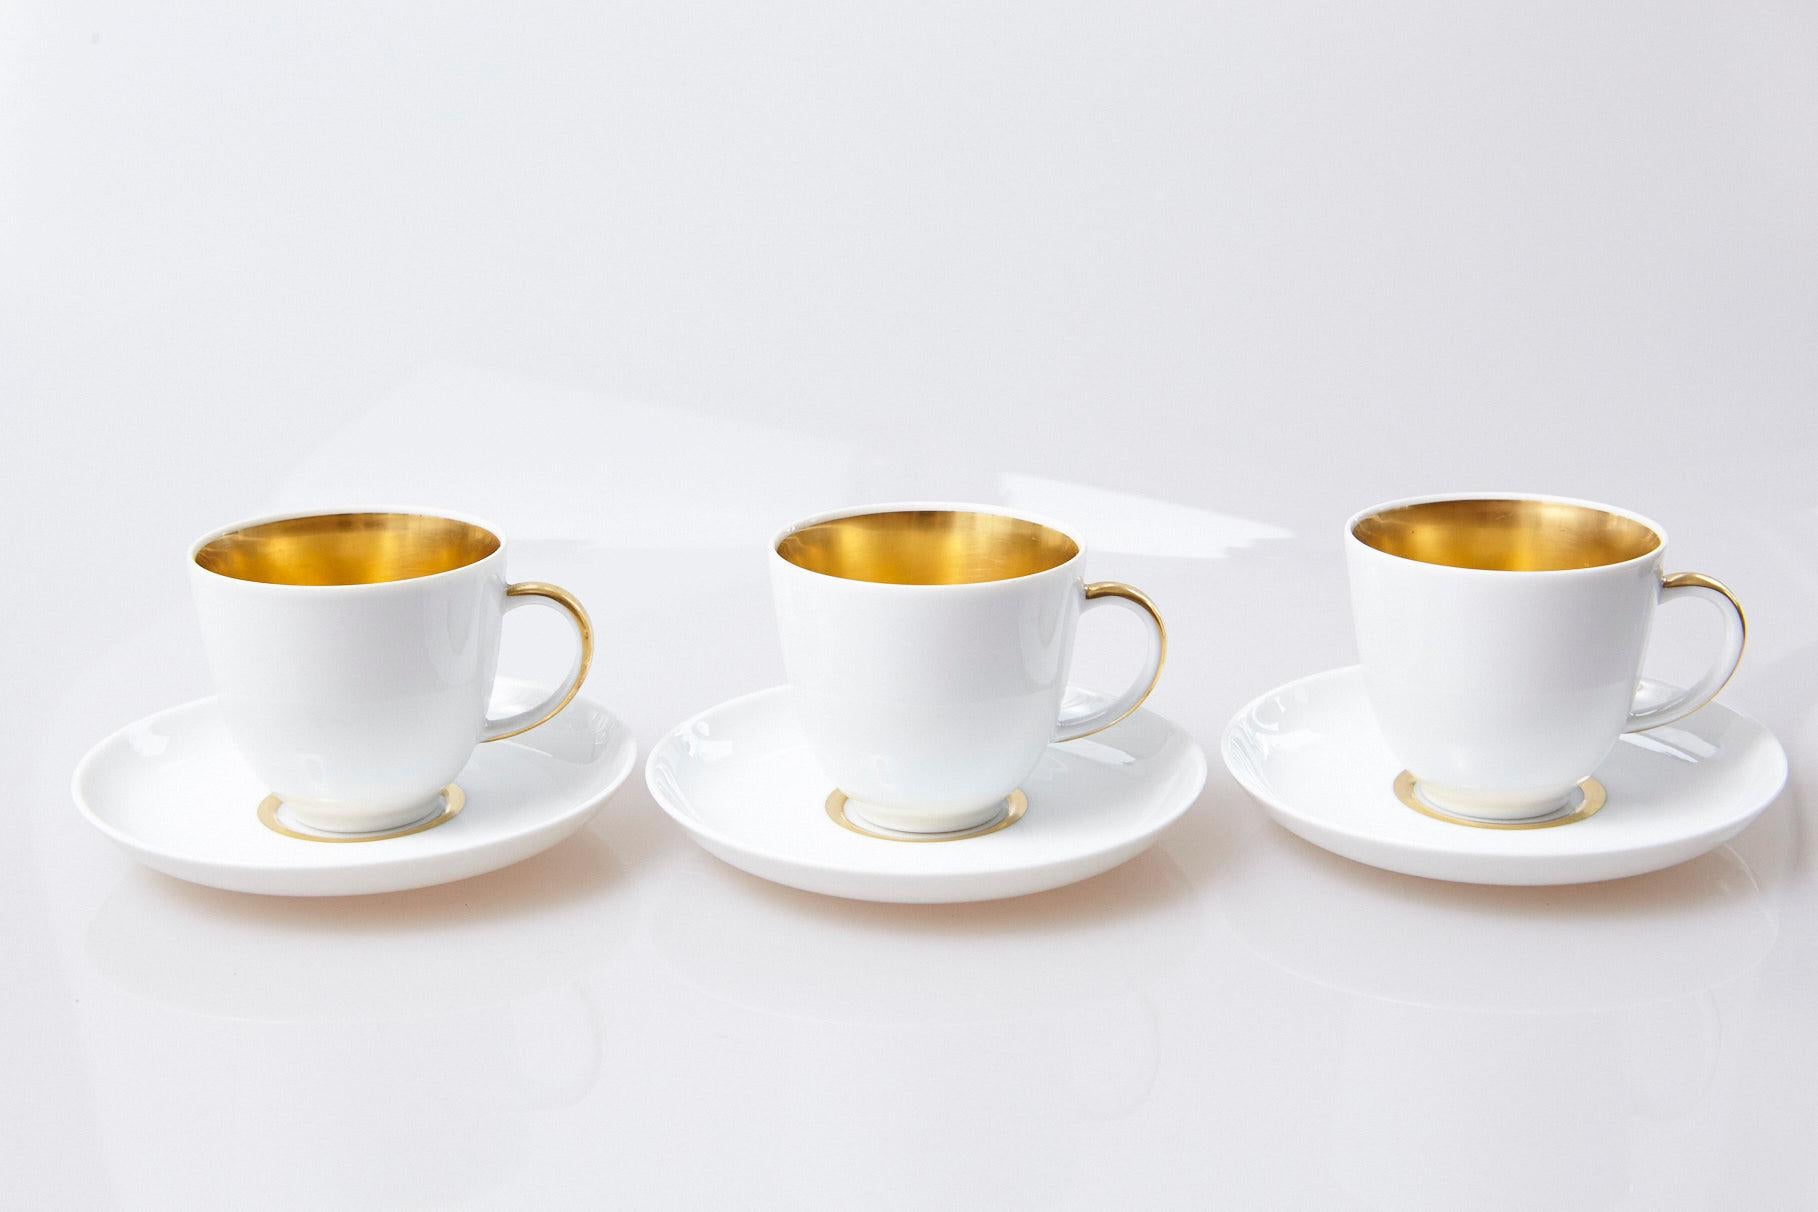 Set of 10 White and Gold Fürstenberg Porcelain Demitasse Cups & Saucers, Germany 1